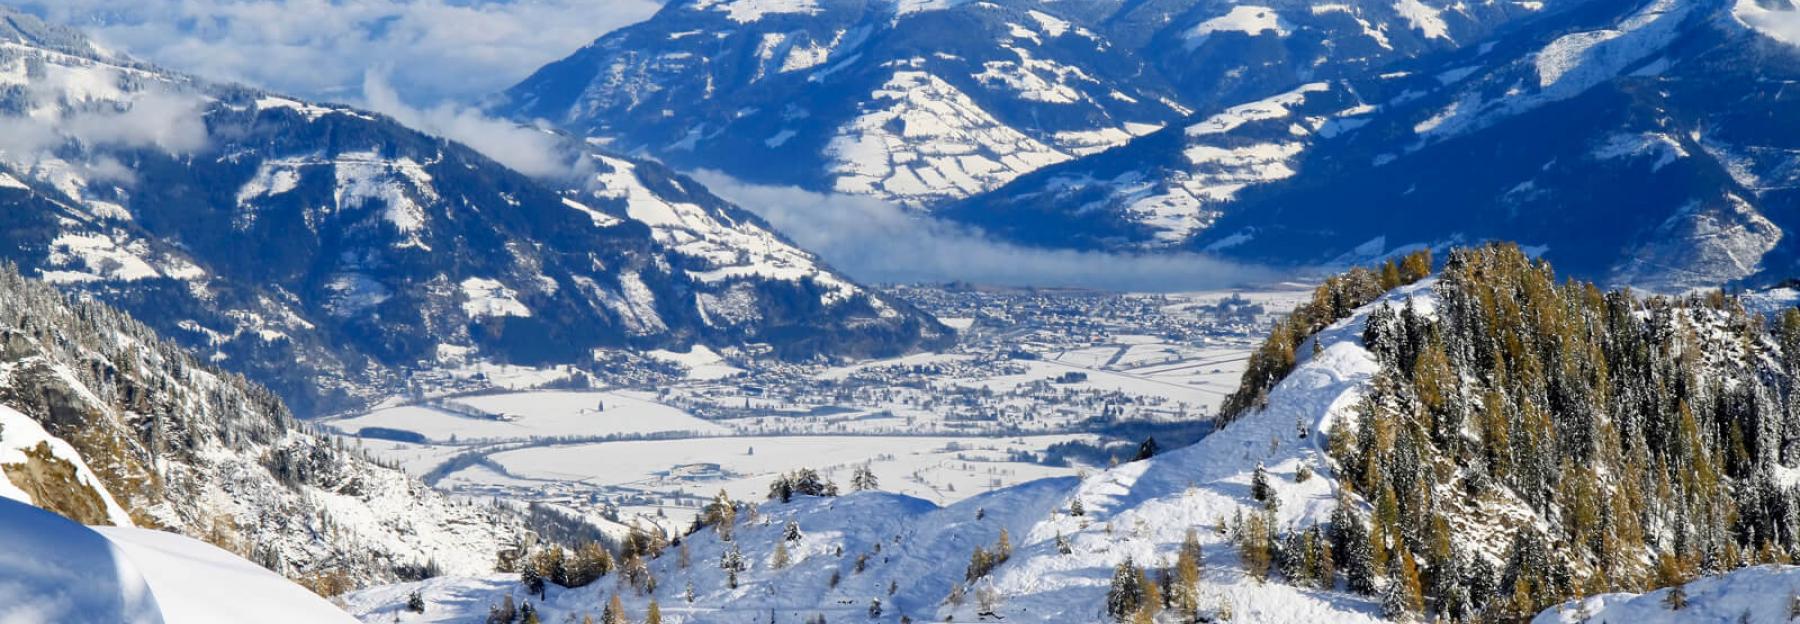 Über dem Kitzsteinhorn - Zell am See – Kaprun Tal und Berge Landschaft Luftaufnahme im Winter